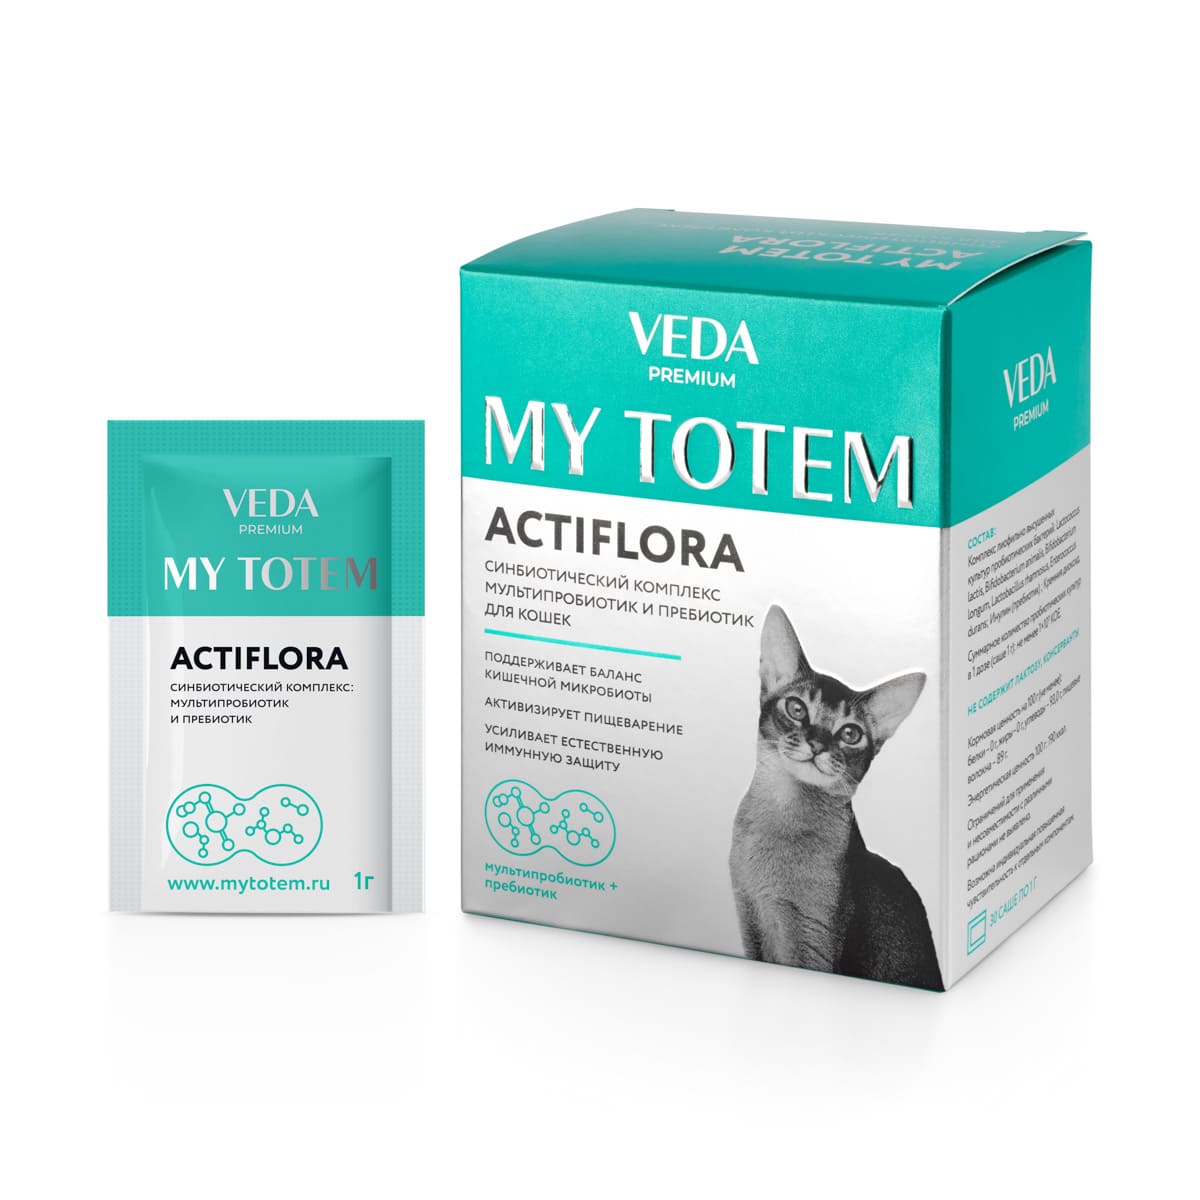 My Totem Actiflora синбиотический комплекс для кошек 30 шт*1 г (цена за 1 шт)